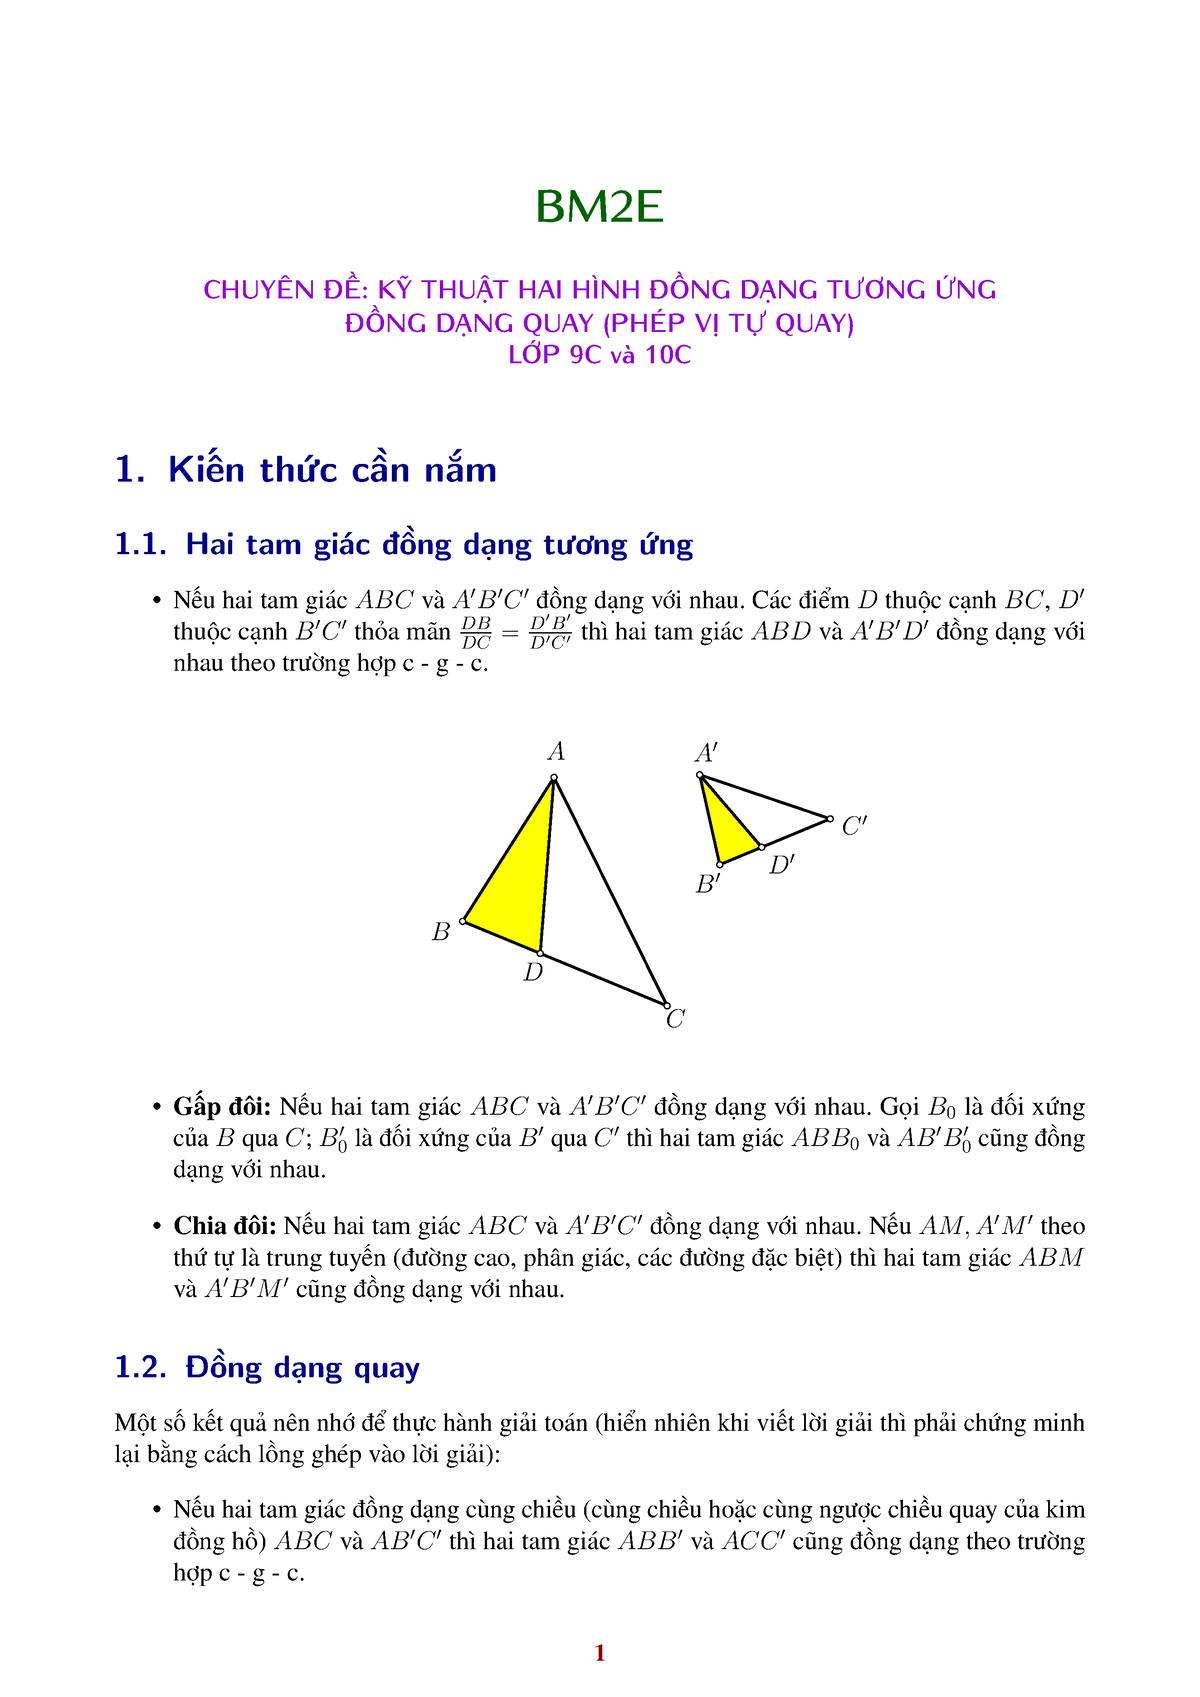 Bài giảng môn Hình học Lớp 8  Tiết 42 Bài 4 Khái niệm hai tam giác đồng  dạng